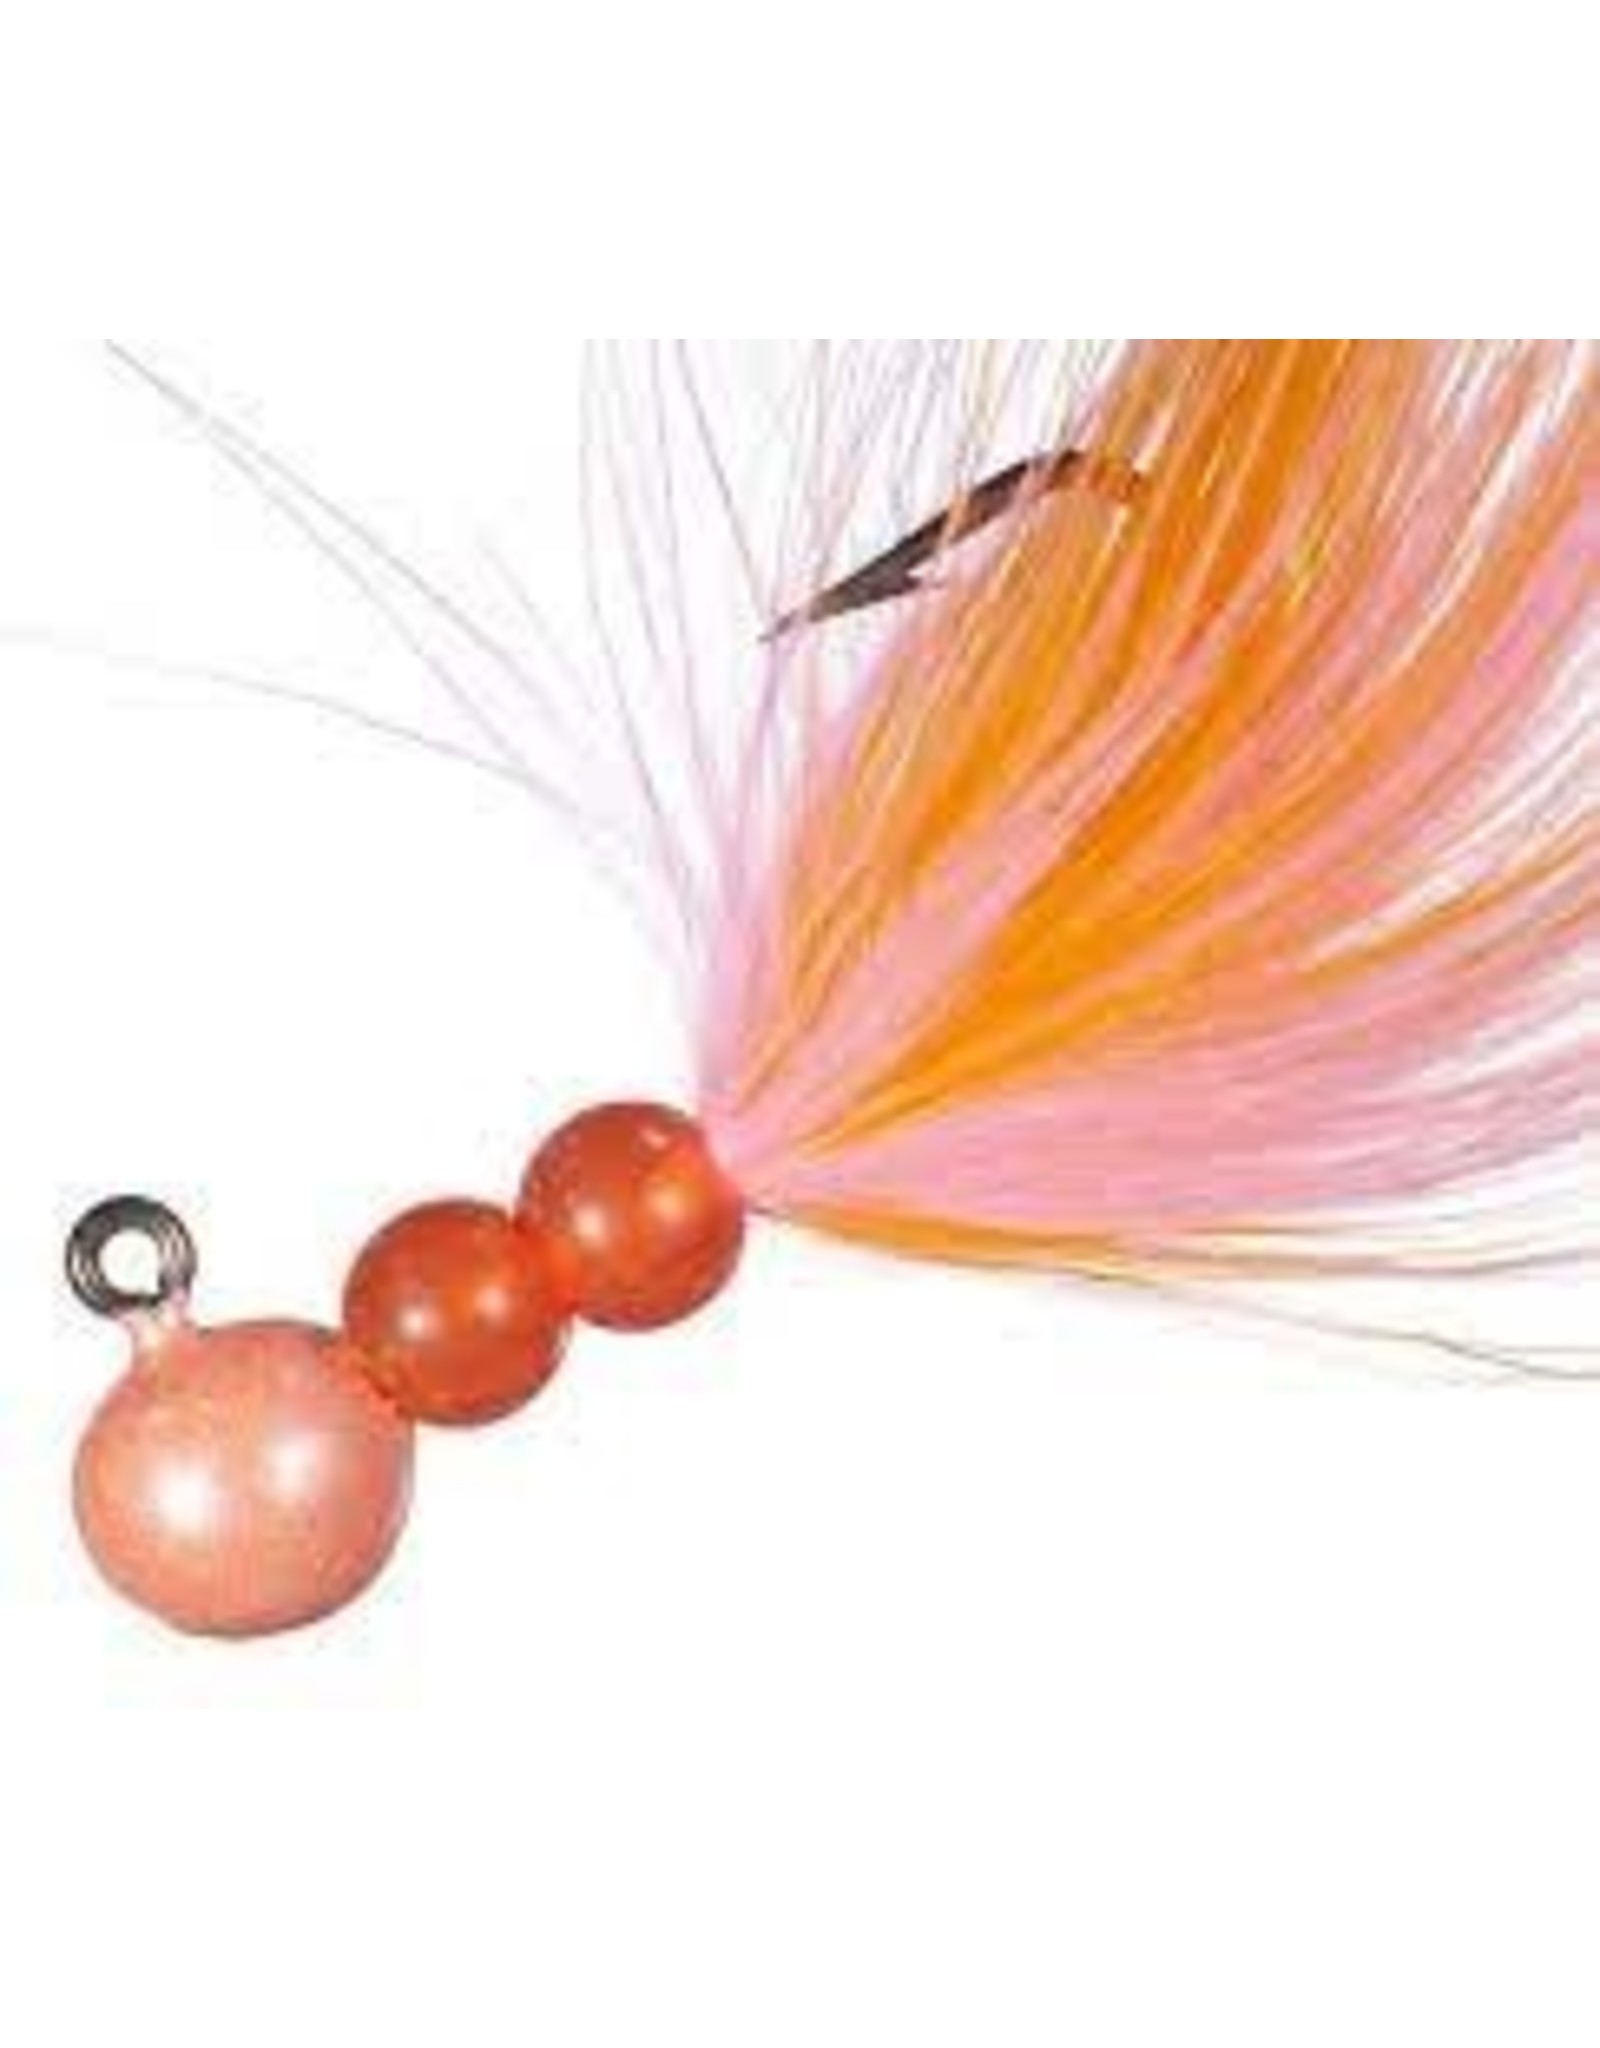 Hawken Hawken Beau Mac Marabou Jig 1/8 oz, 1/0 Hook - Pink & Pearl Orange